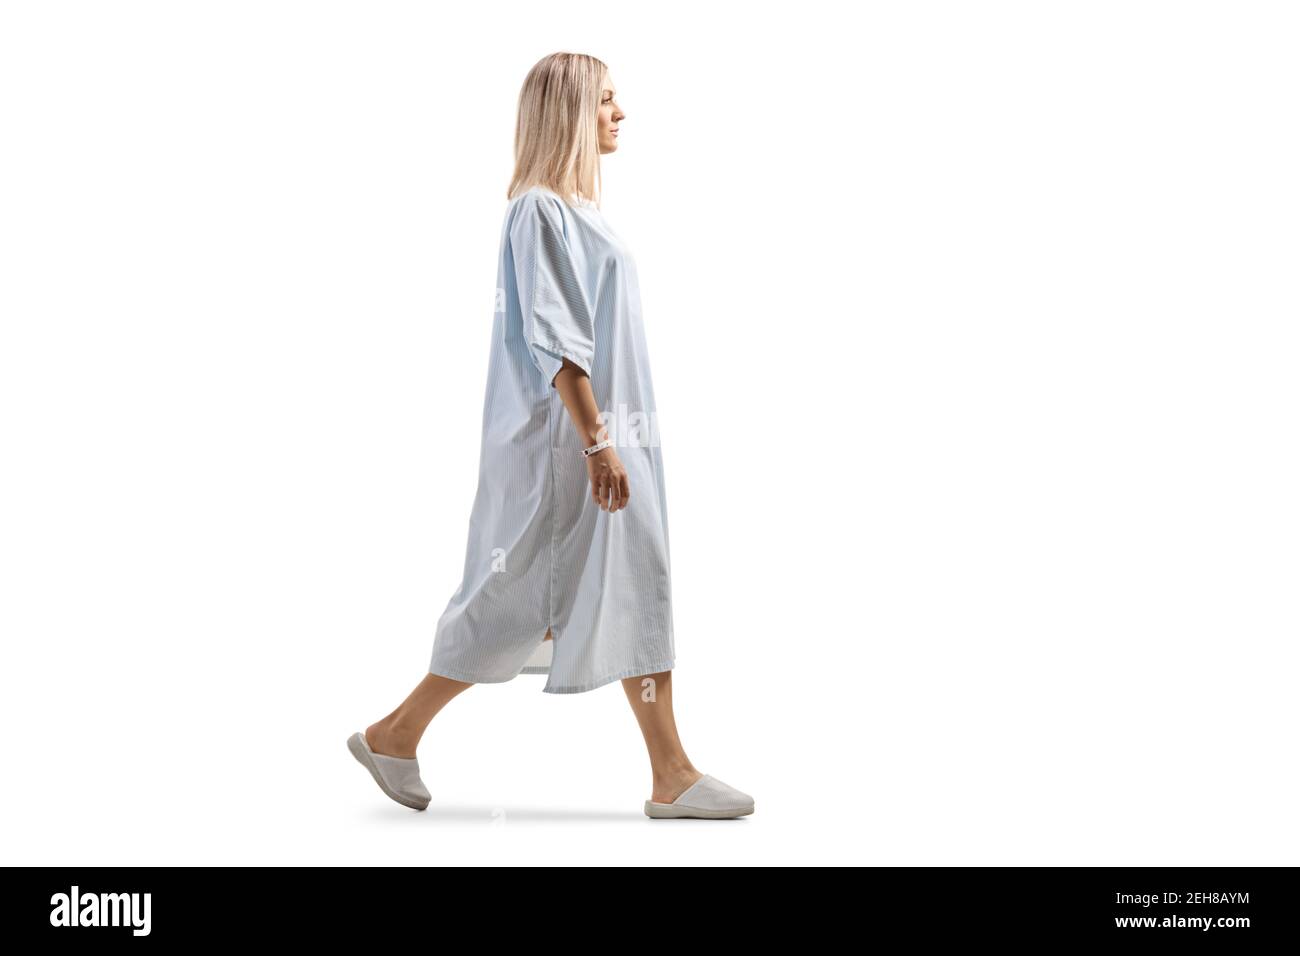 Prise de vue de profil en longueur d'une patiente dans un robe de marche isolée sur fond blanc Banque D'Images